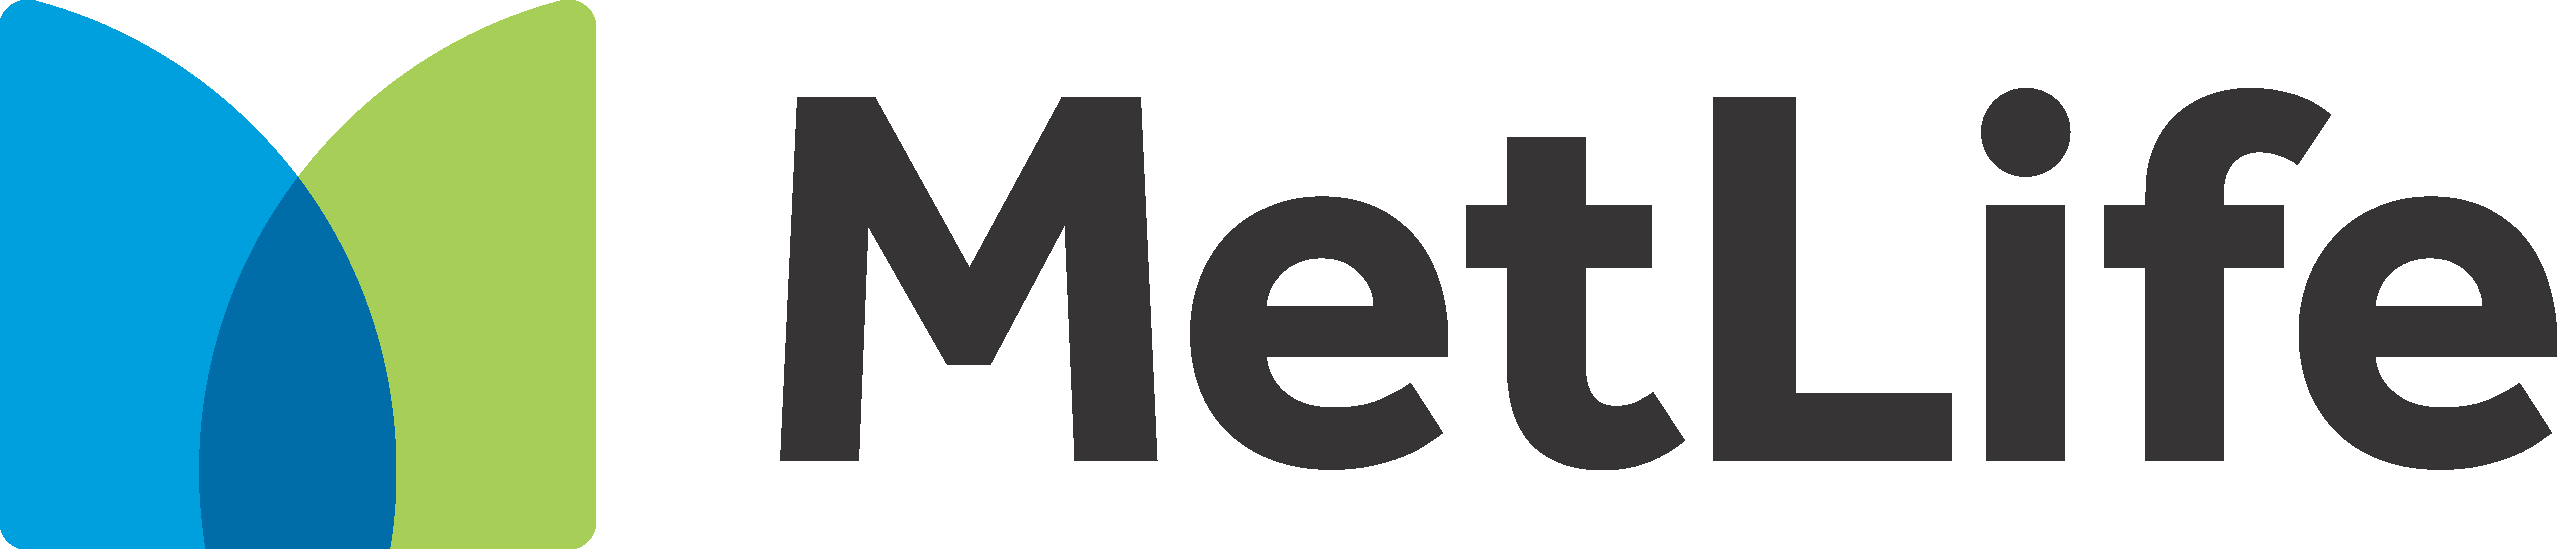 Metlife_Logo_2016